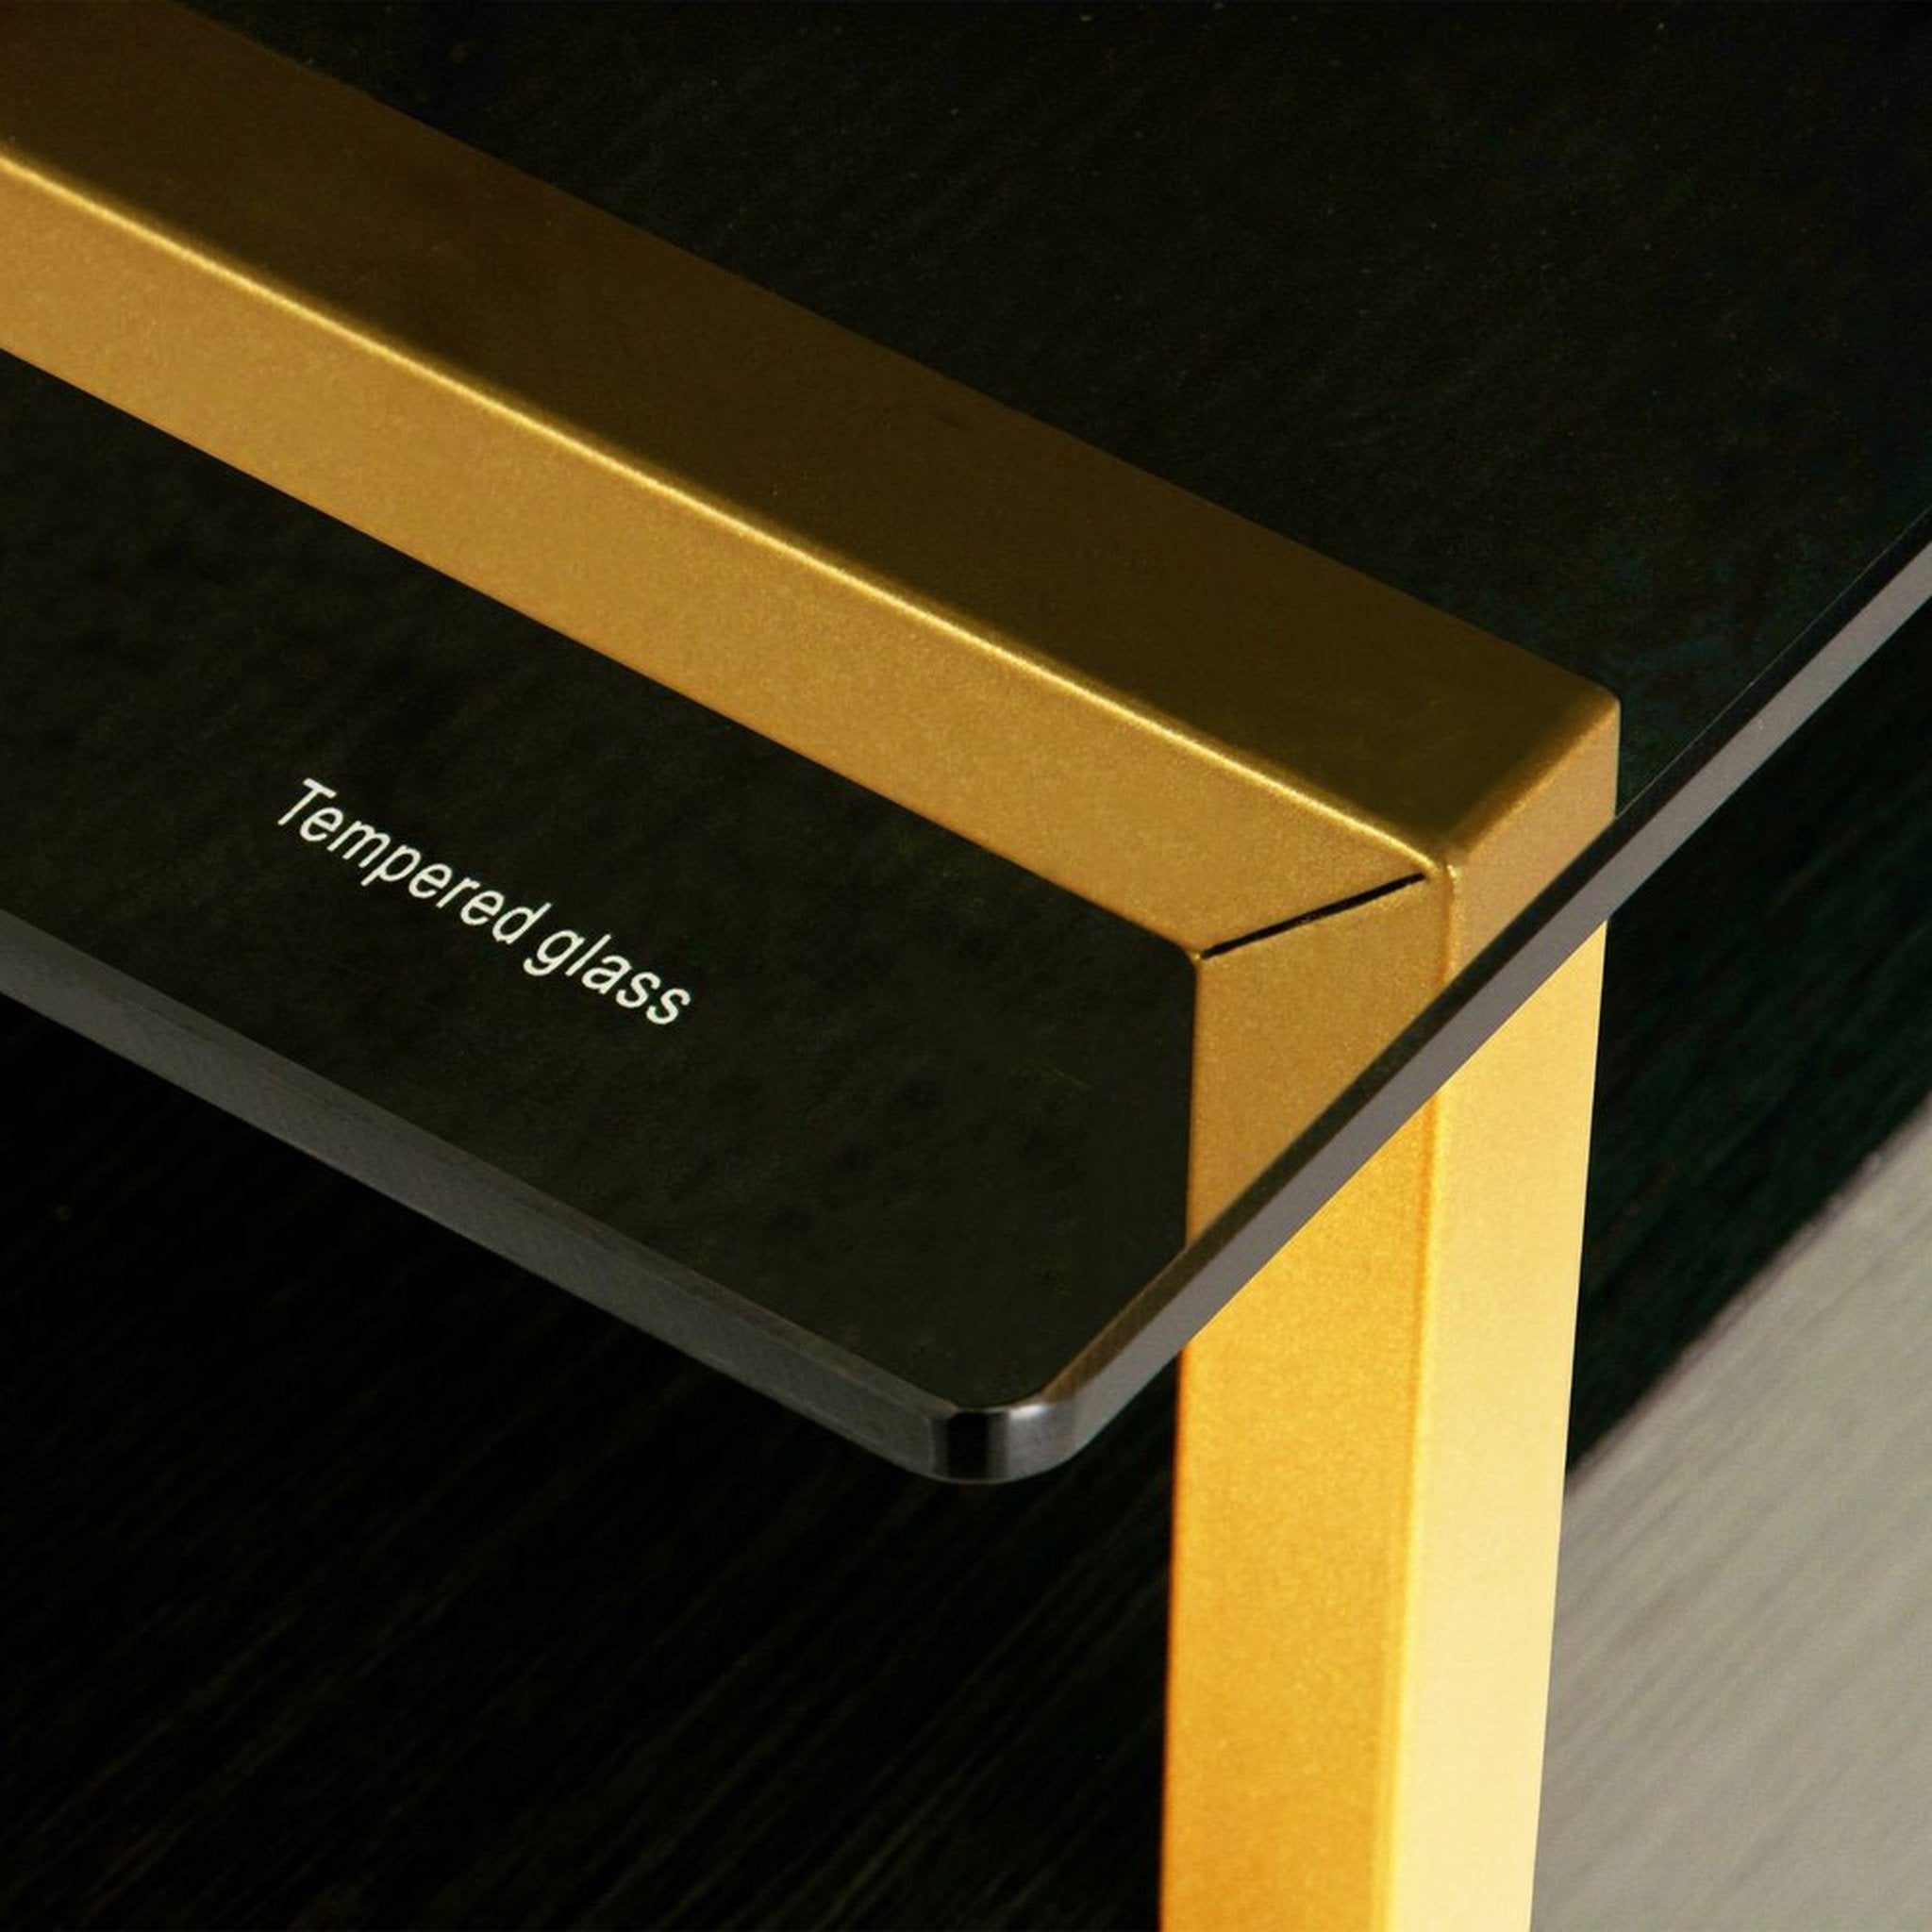 Techni Mobili Gold Computer Desk with Storage